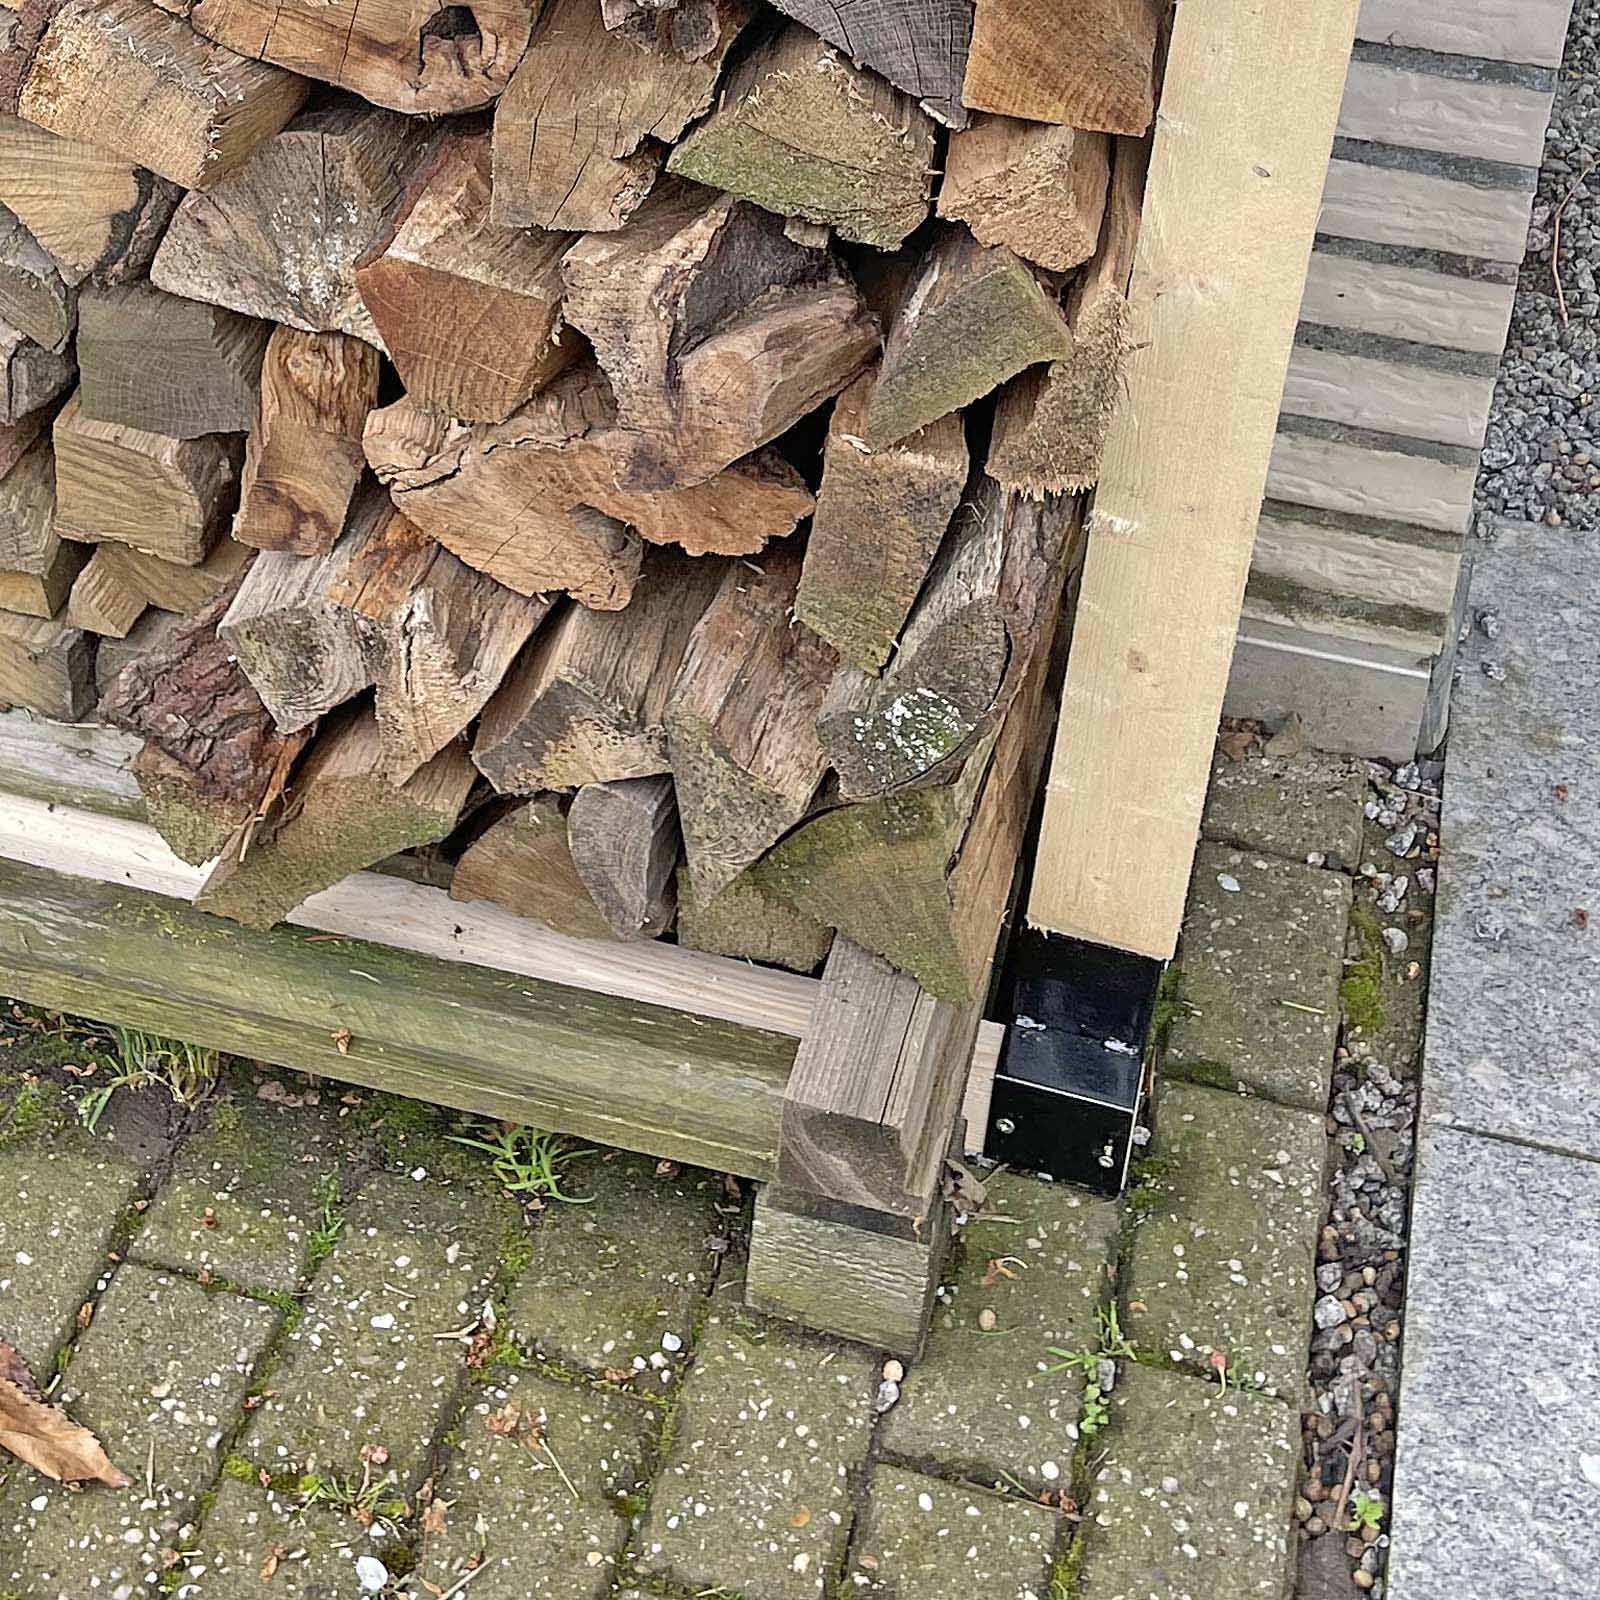 Porte-bûches robuste range-bûches solide support pour bois de